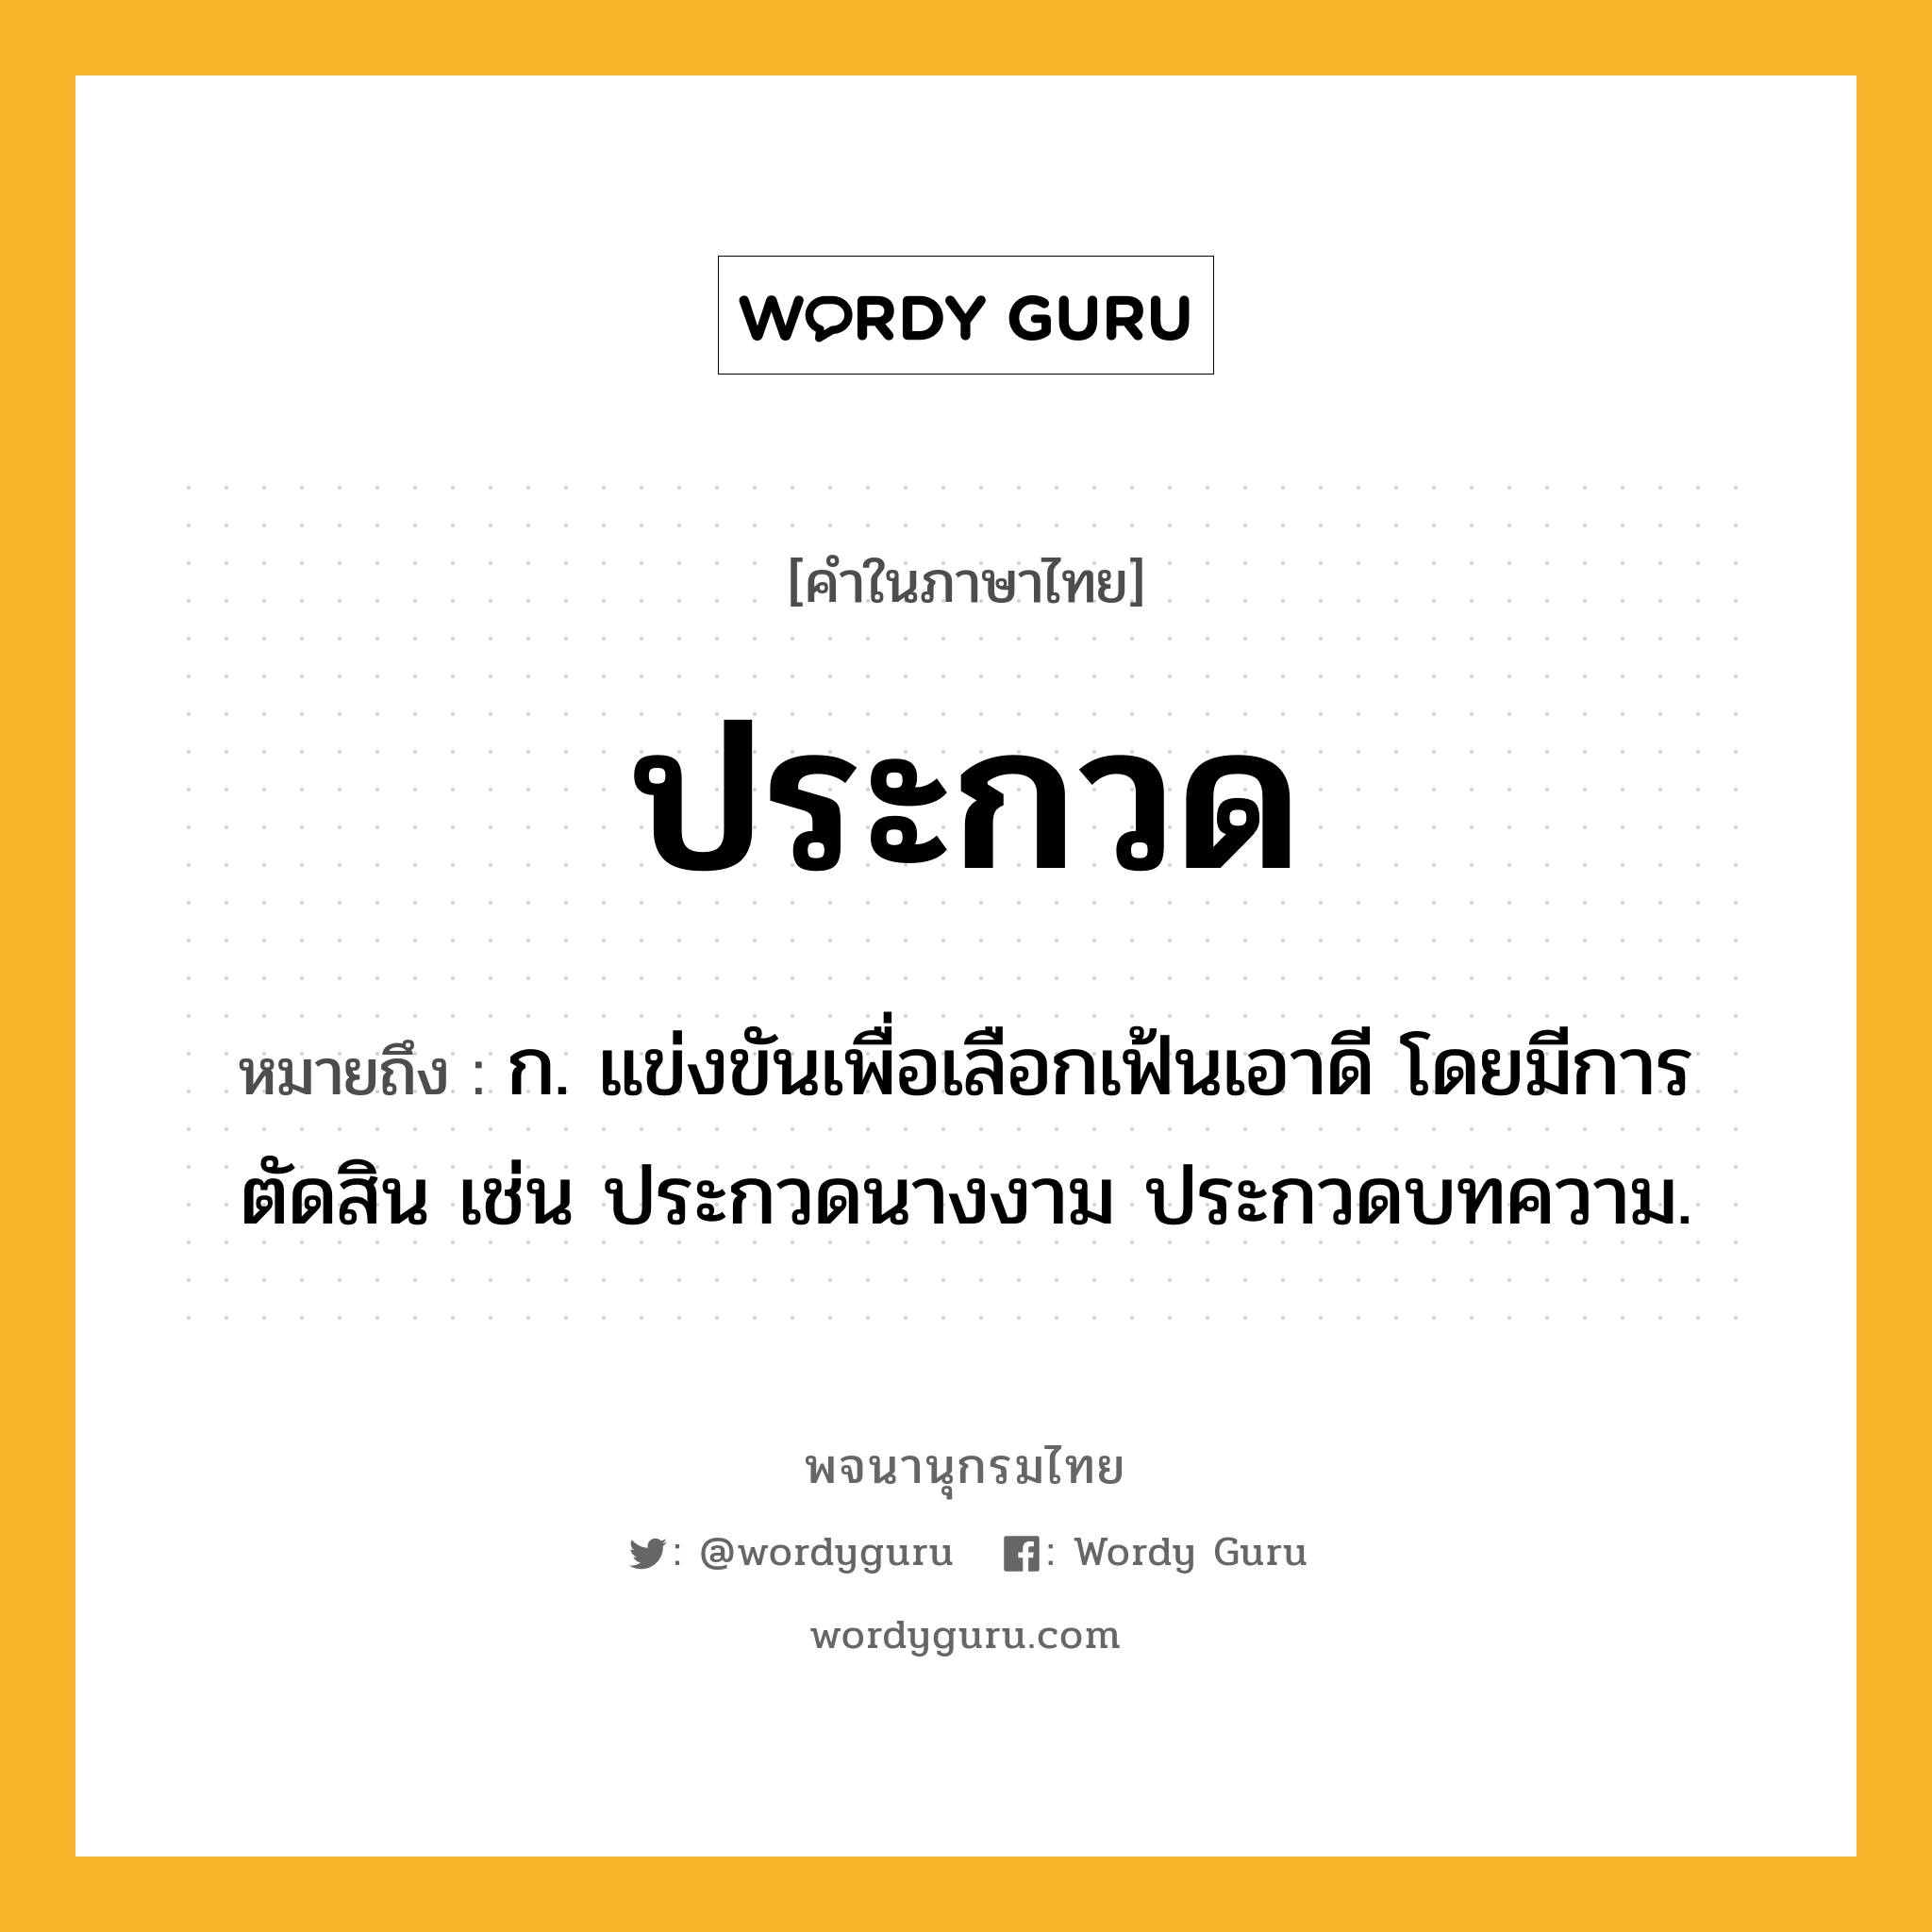 ประกวด หมายถึงอะไร?, คำในภาษาไทย ประกวด หมายถึง ก. แข่งขันเพื่อเลือกเฟ้นเอาดี โดยมีการตัดสิน เช่น ประกวดนางงาม ประกวดบทความ.